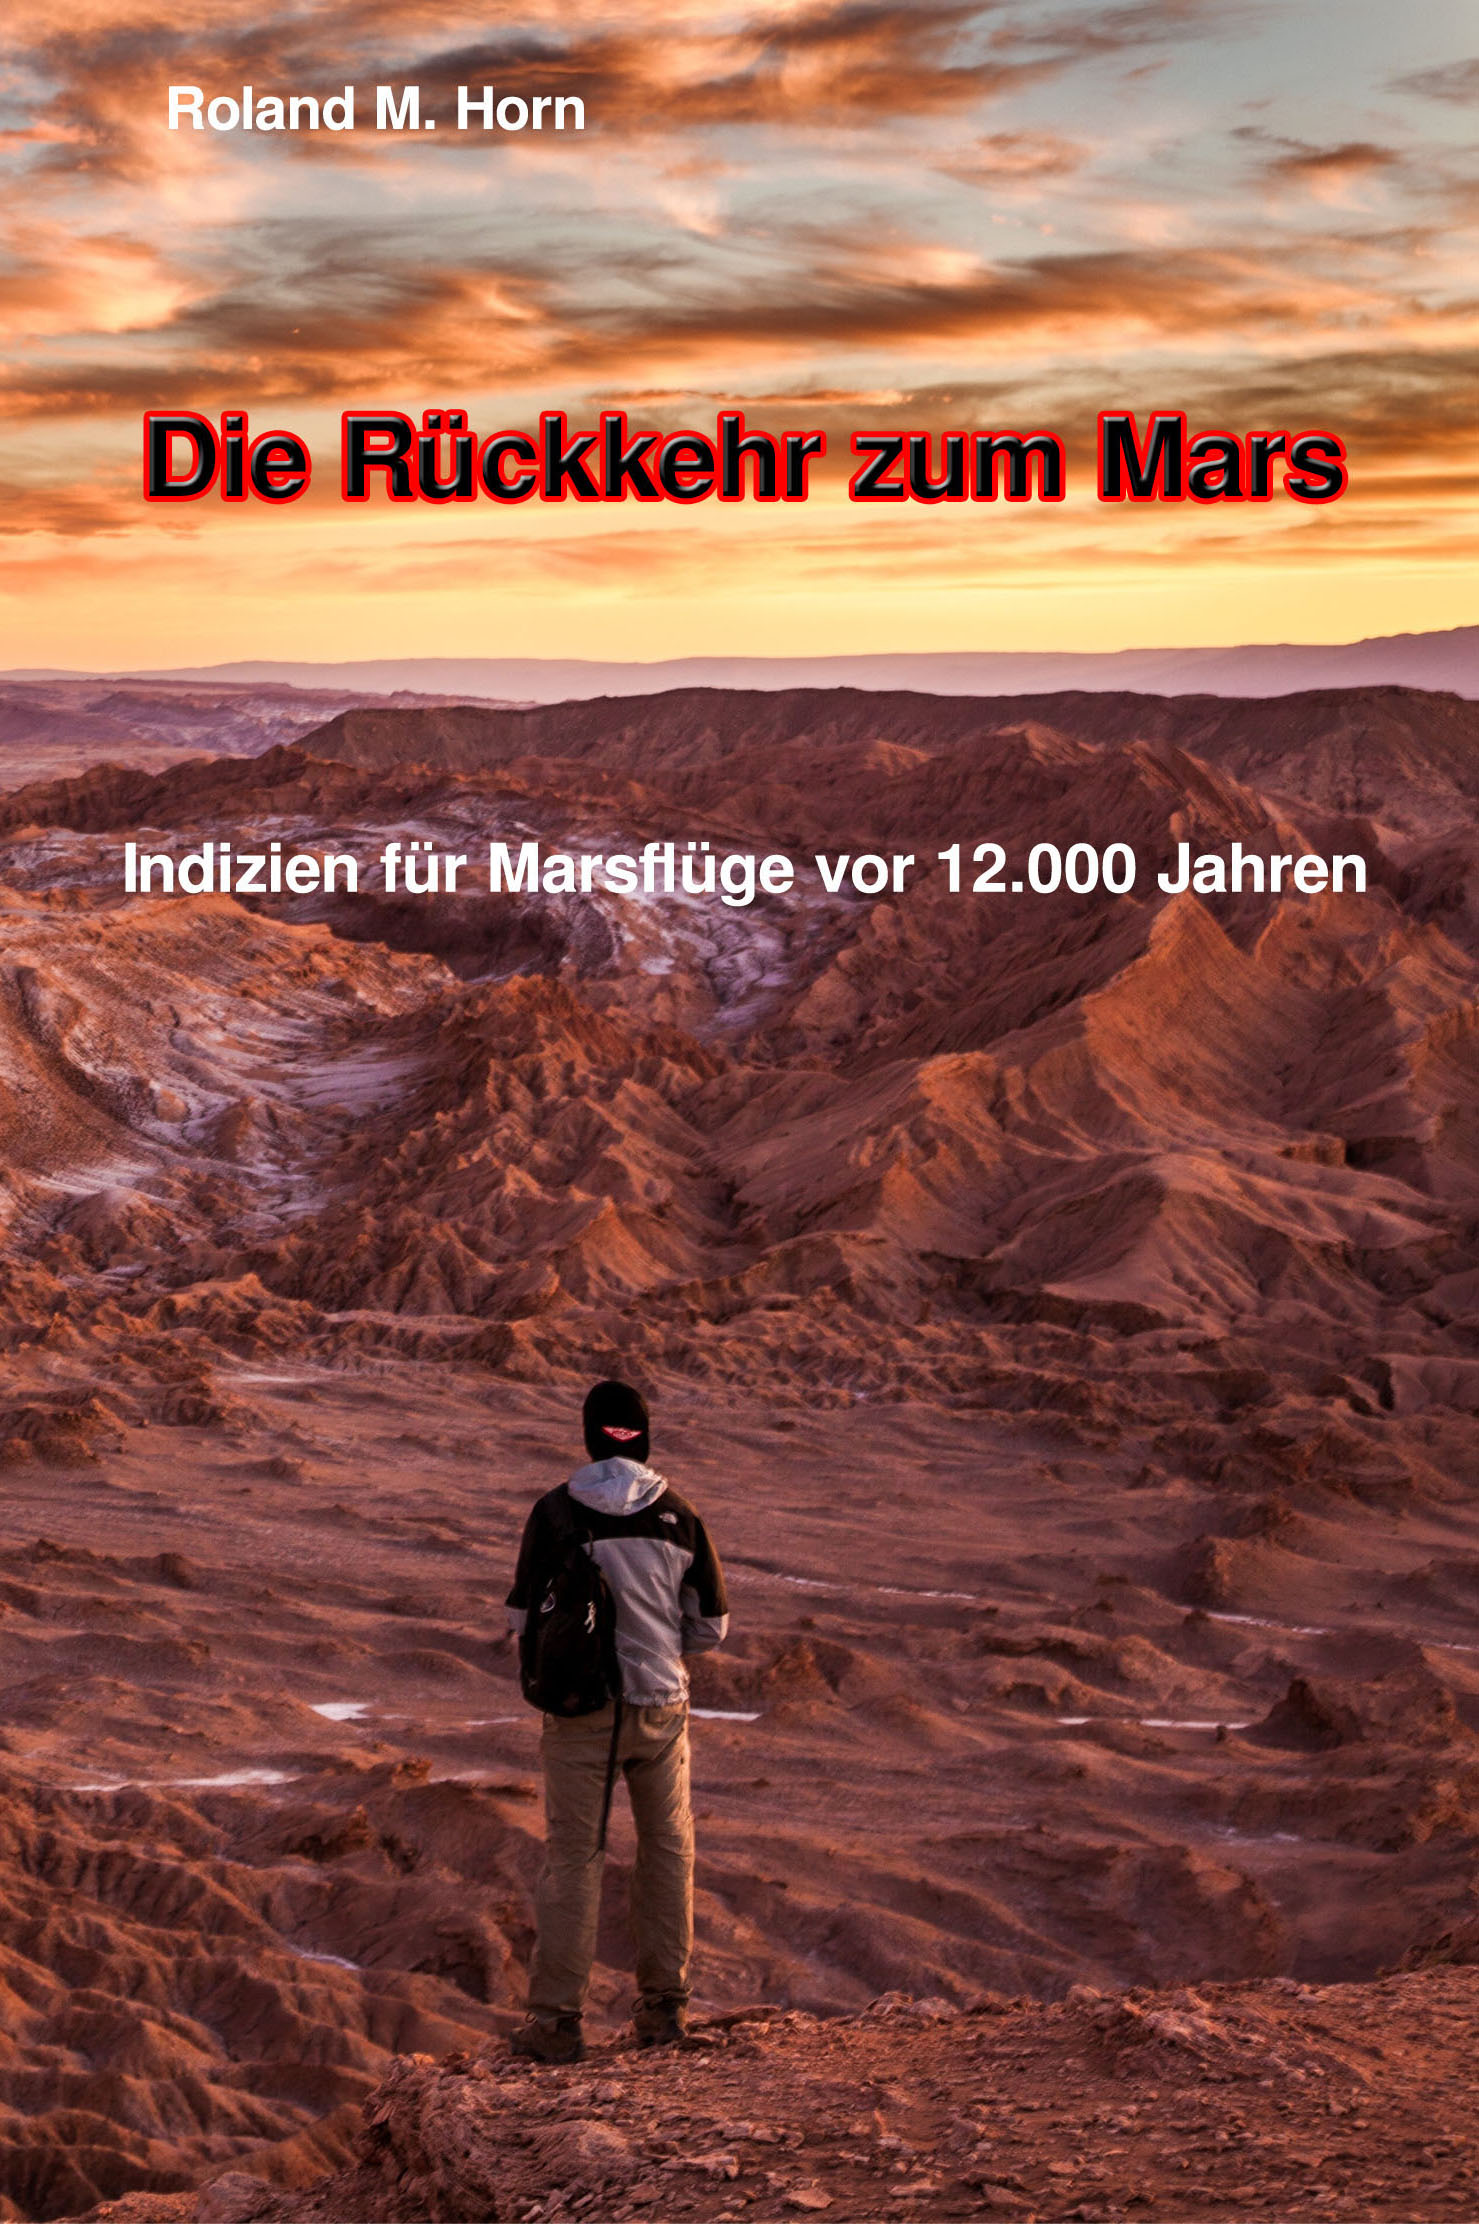 Mars Buch Kopie Frontcover